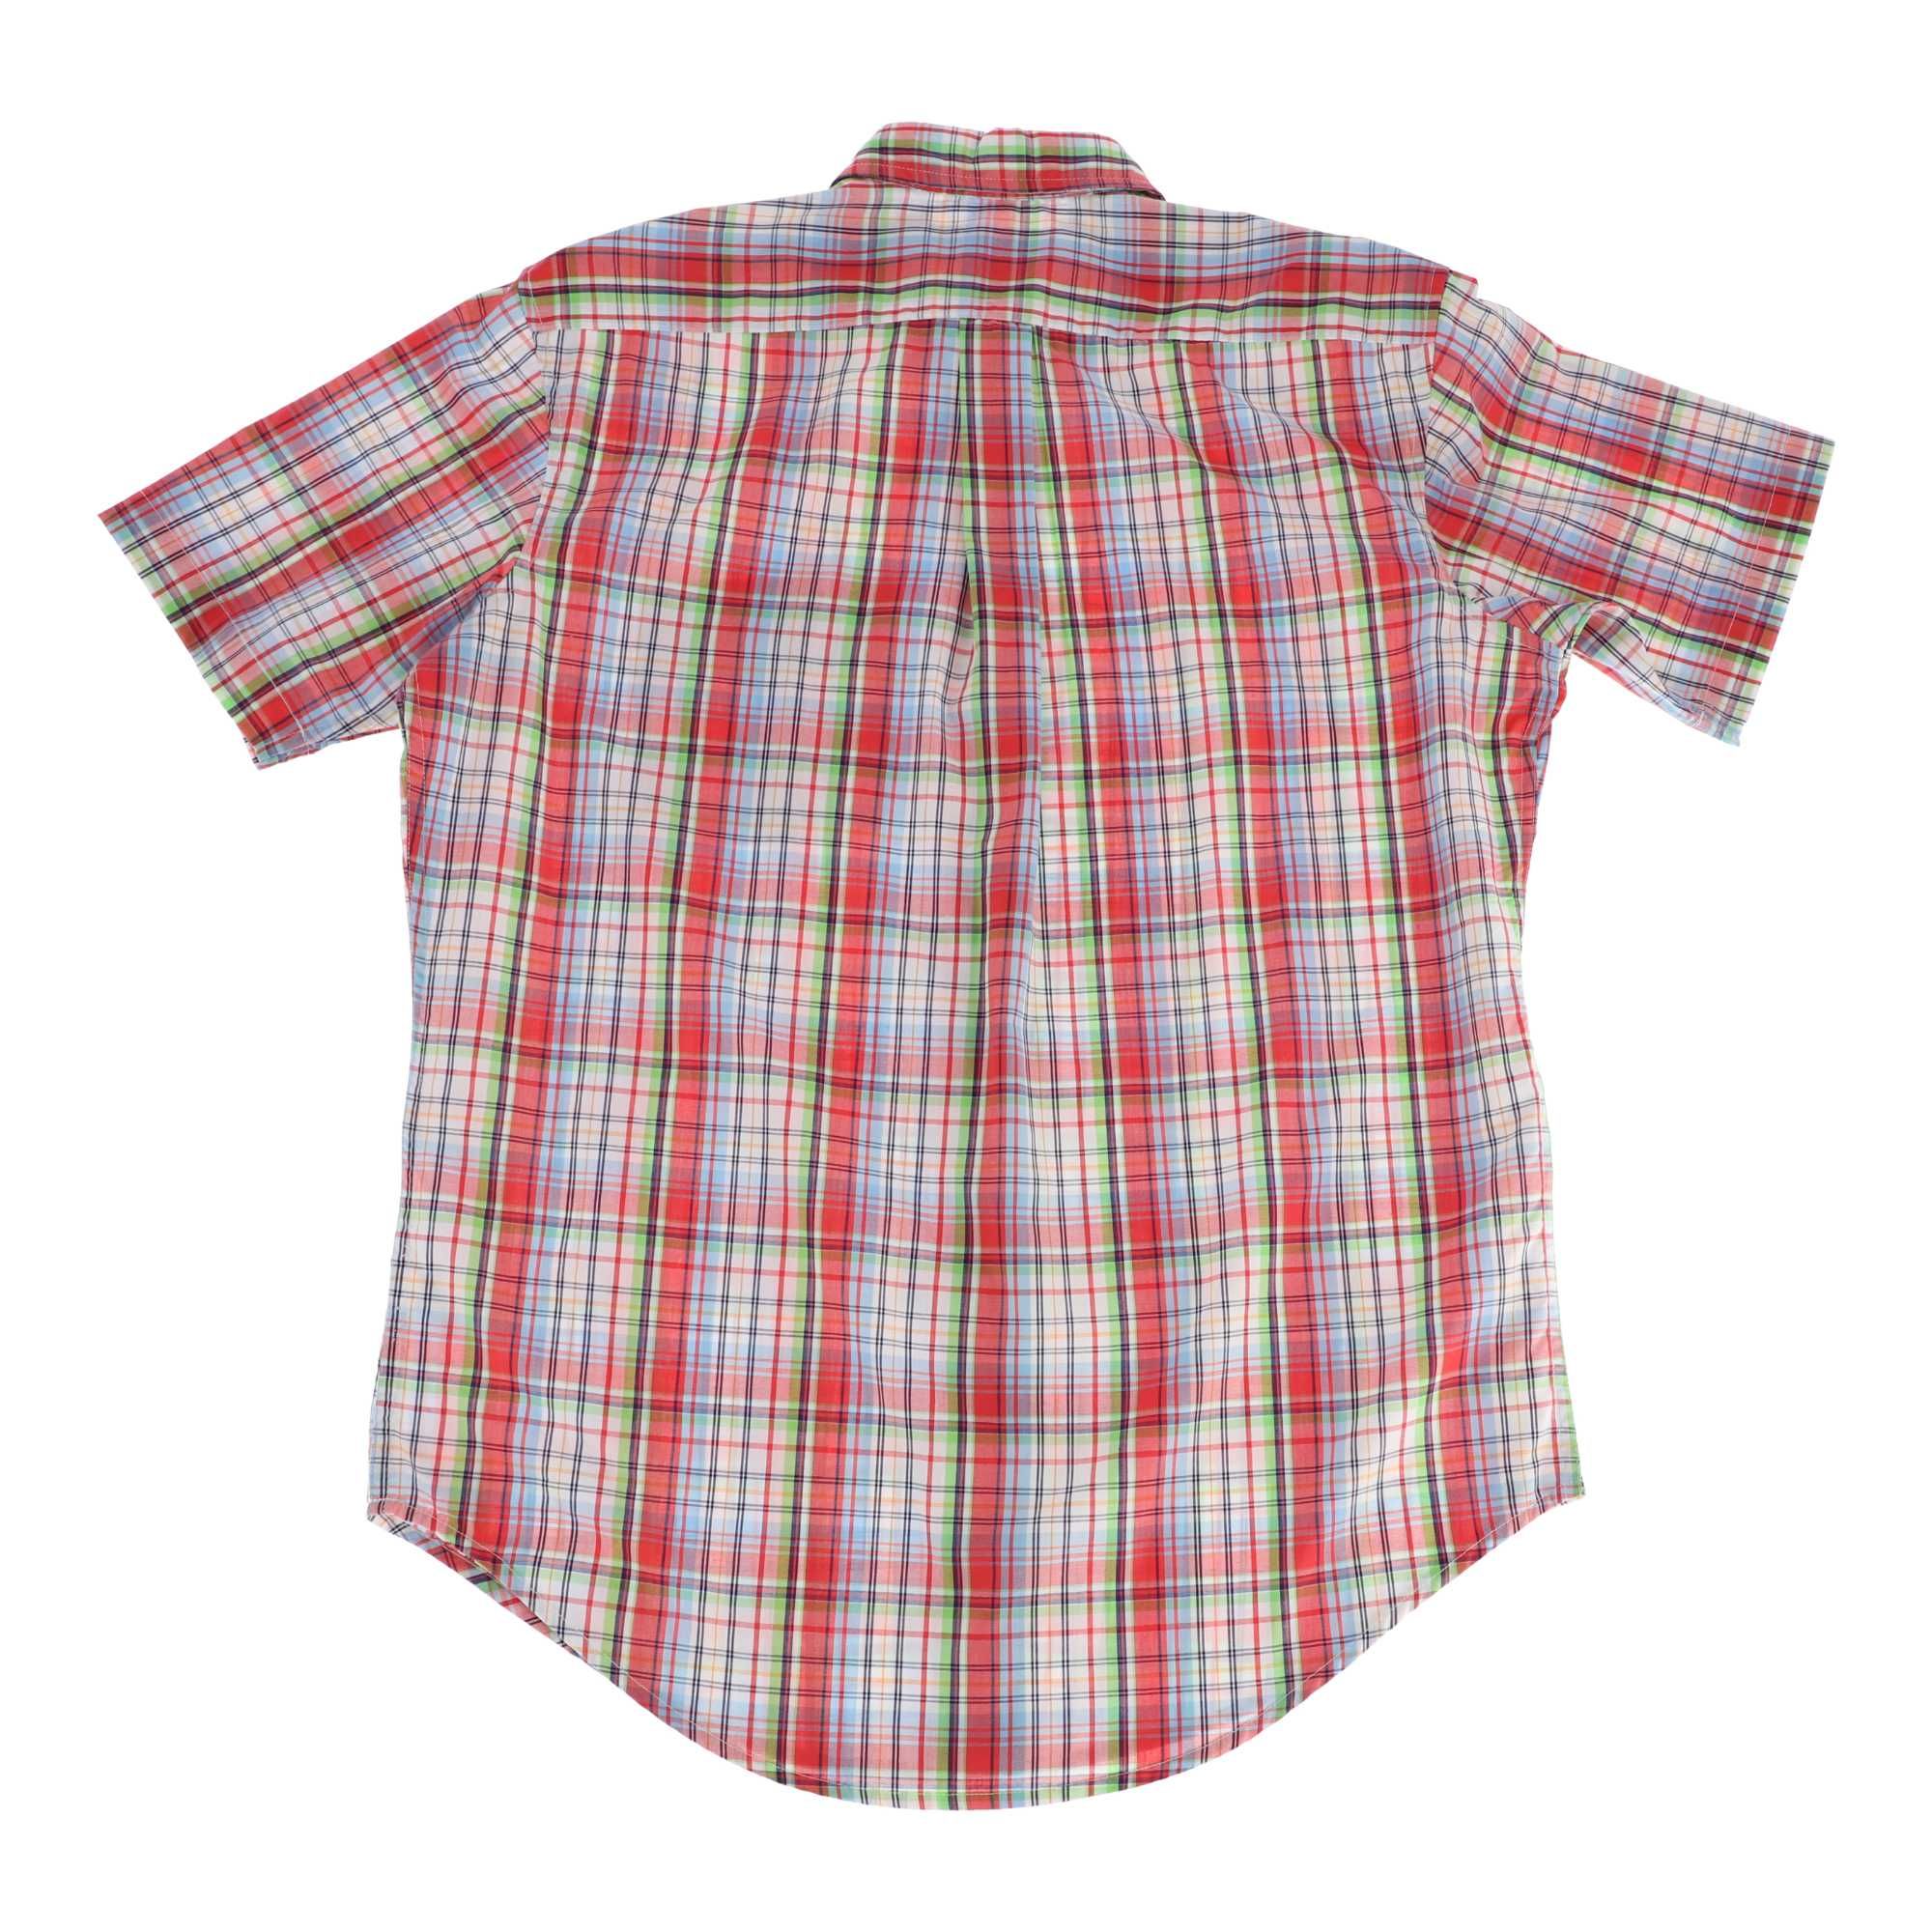 Czerwona koszula marki U. S. POLO ASSN., rozmiar 38